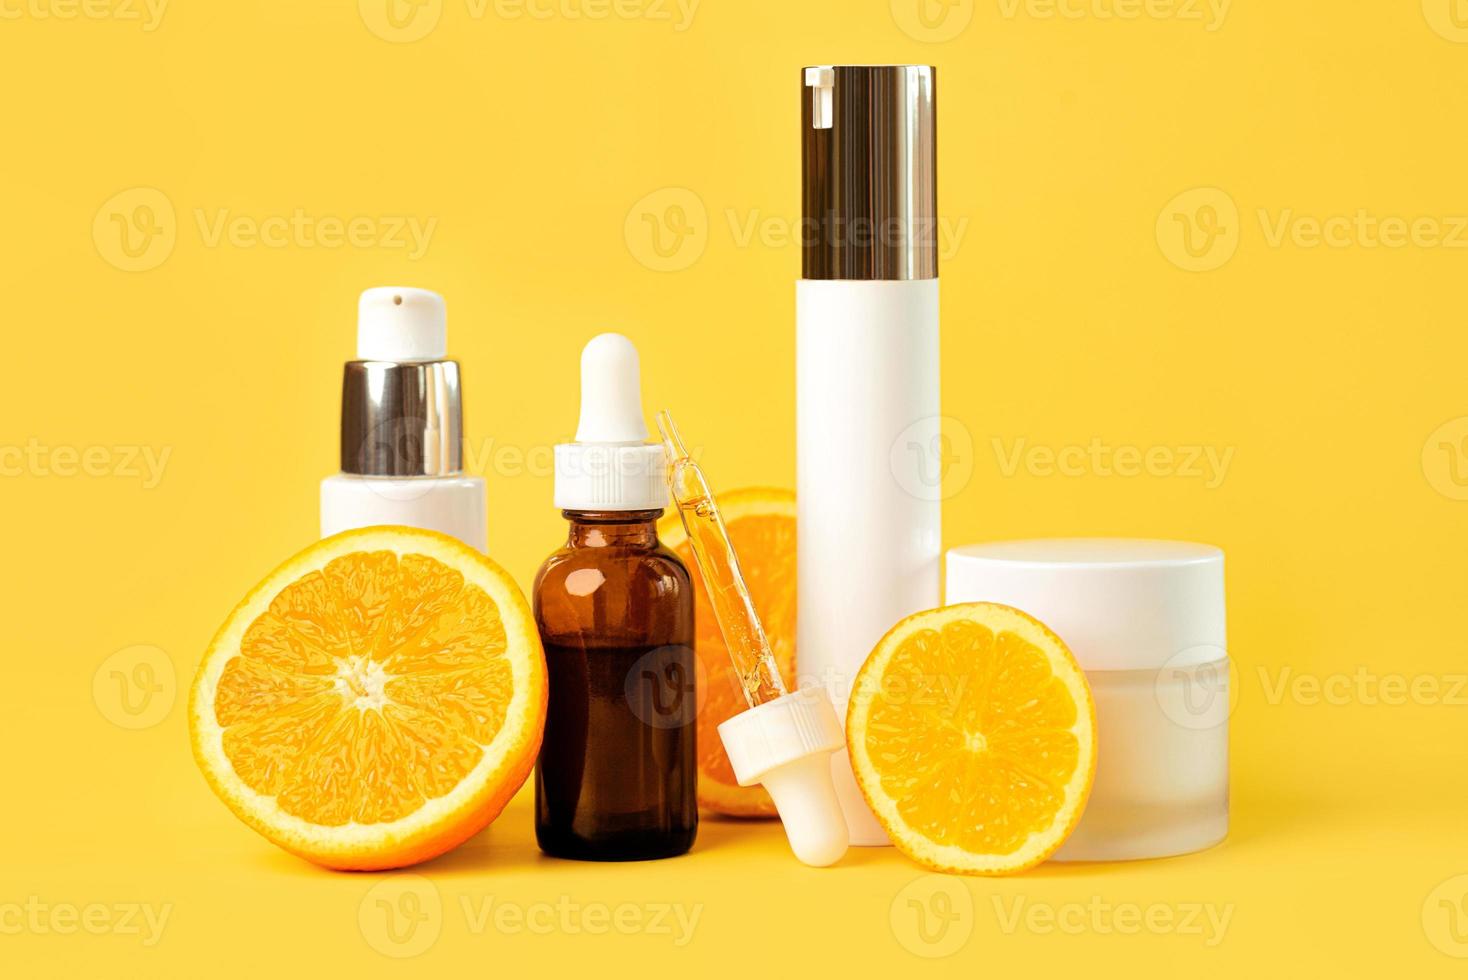 einstellen von Kosmetika zum Haut Pflege und Schönheit mit frisch saftig Orangen. Haut Pflege und Schönheit Produkte Konzept foto